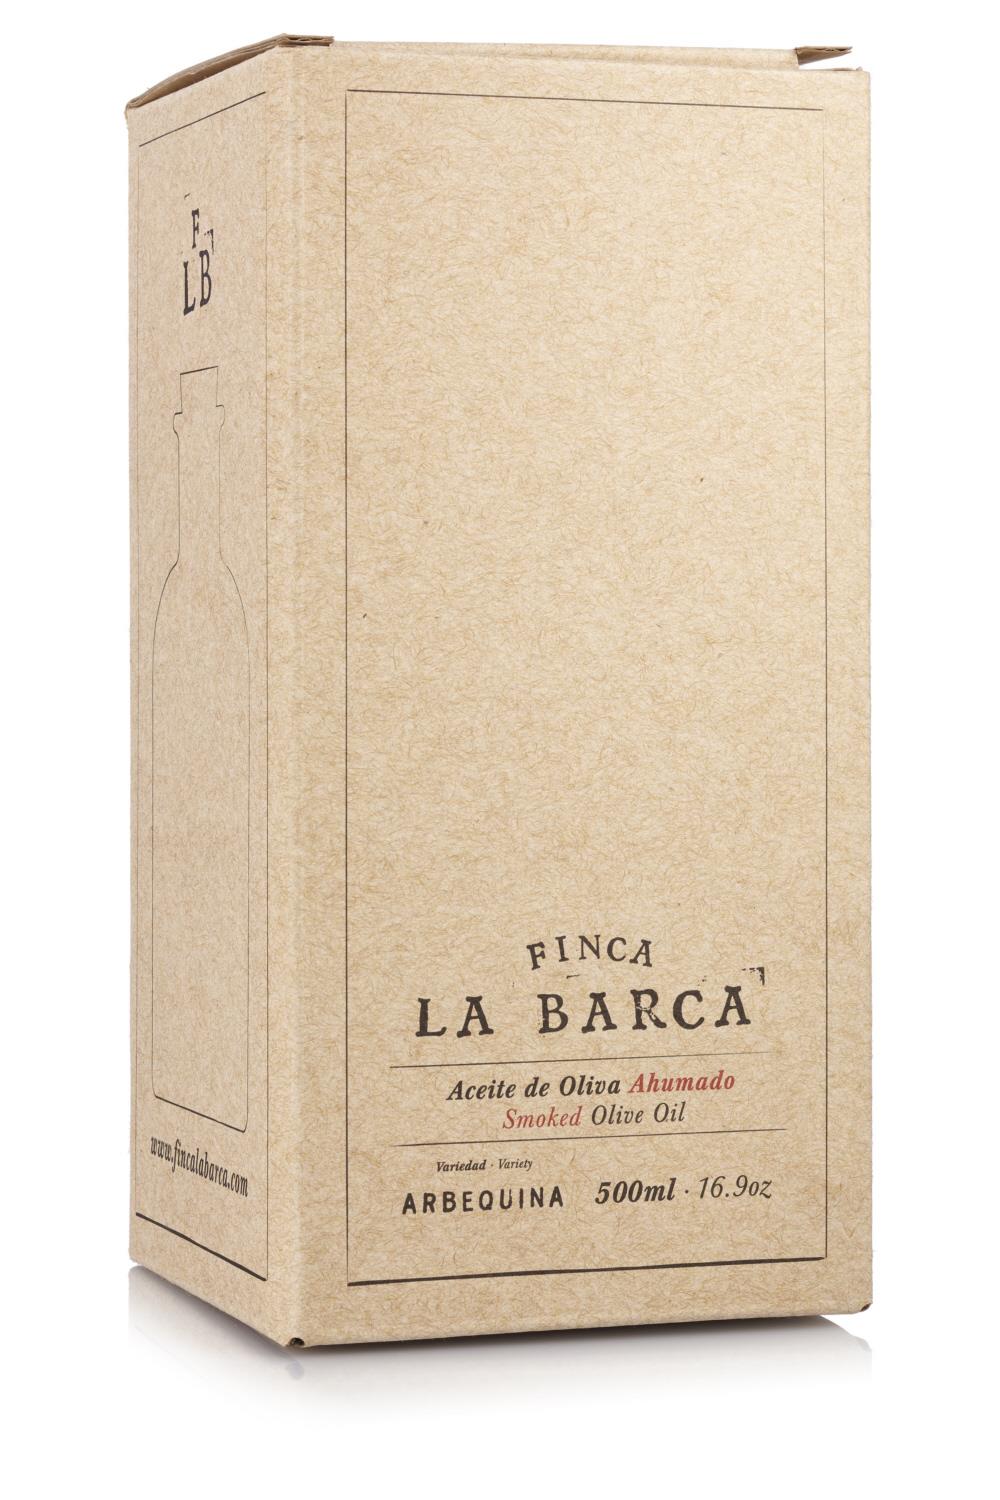 Geräuchertes Olivenöl  "Finca La Barca" 500 ml Flasche